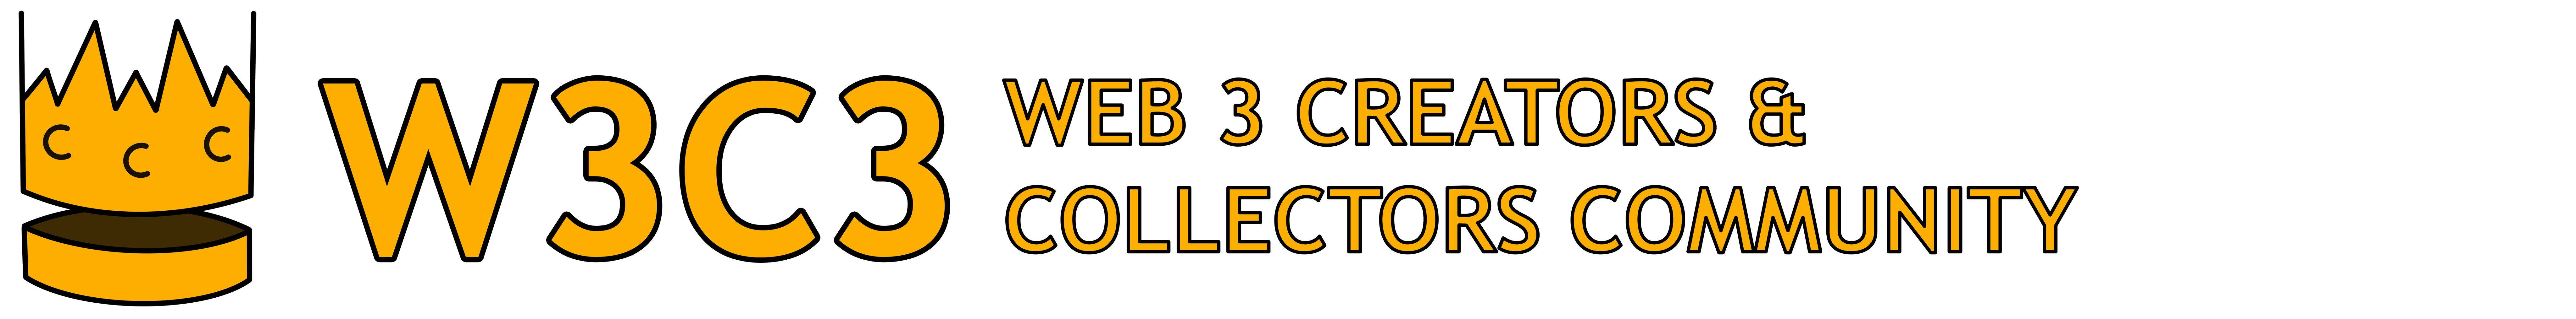 Web 3 Creators & Collectors Community